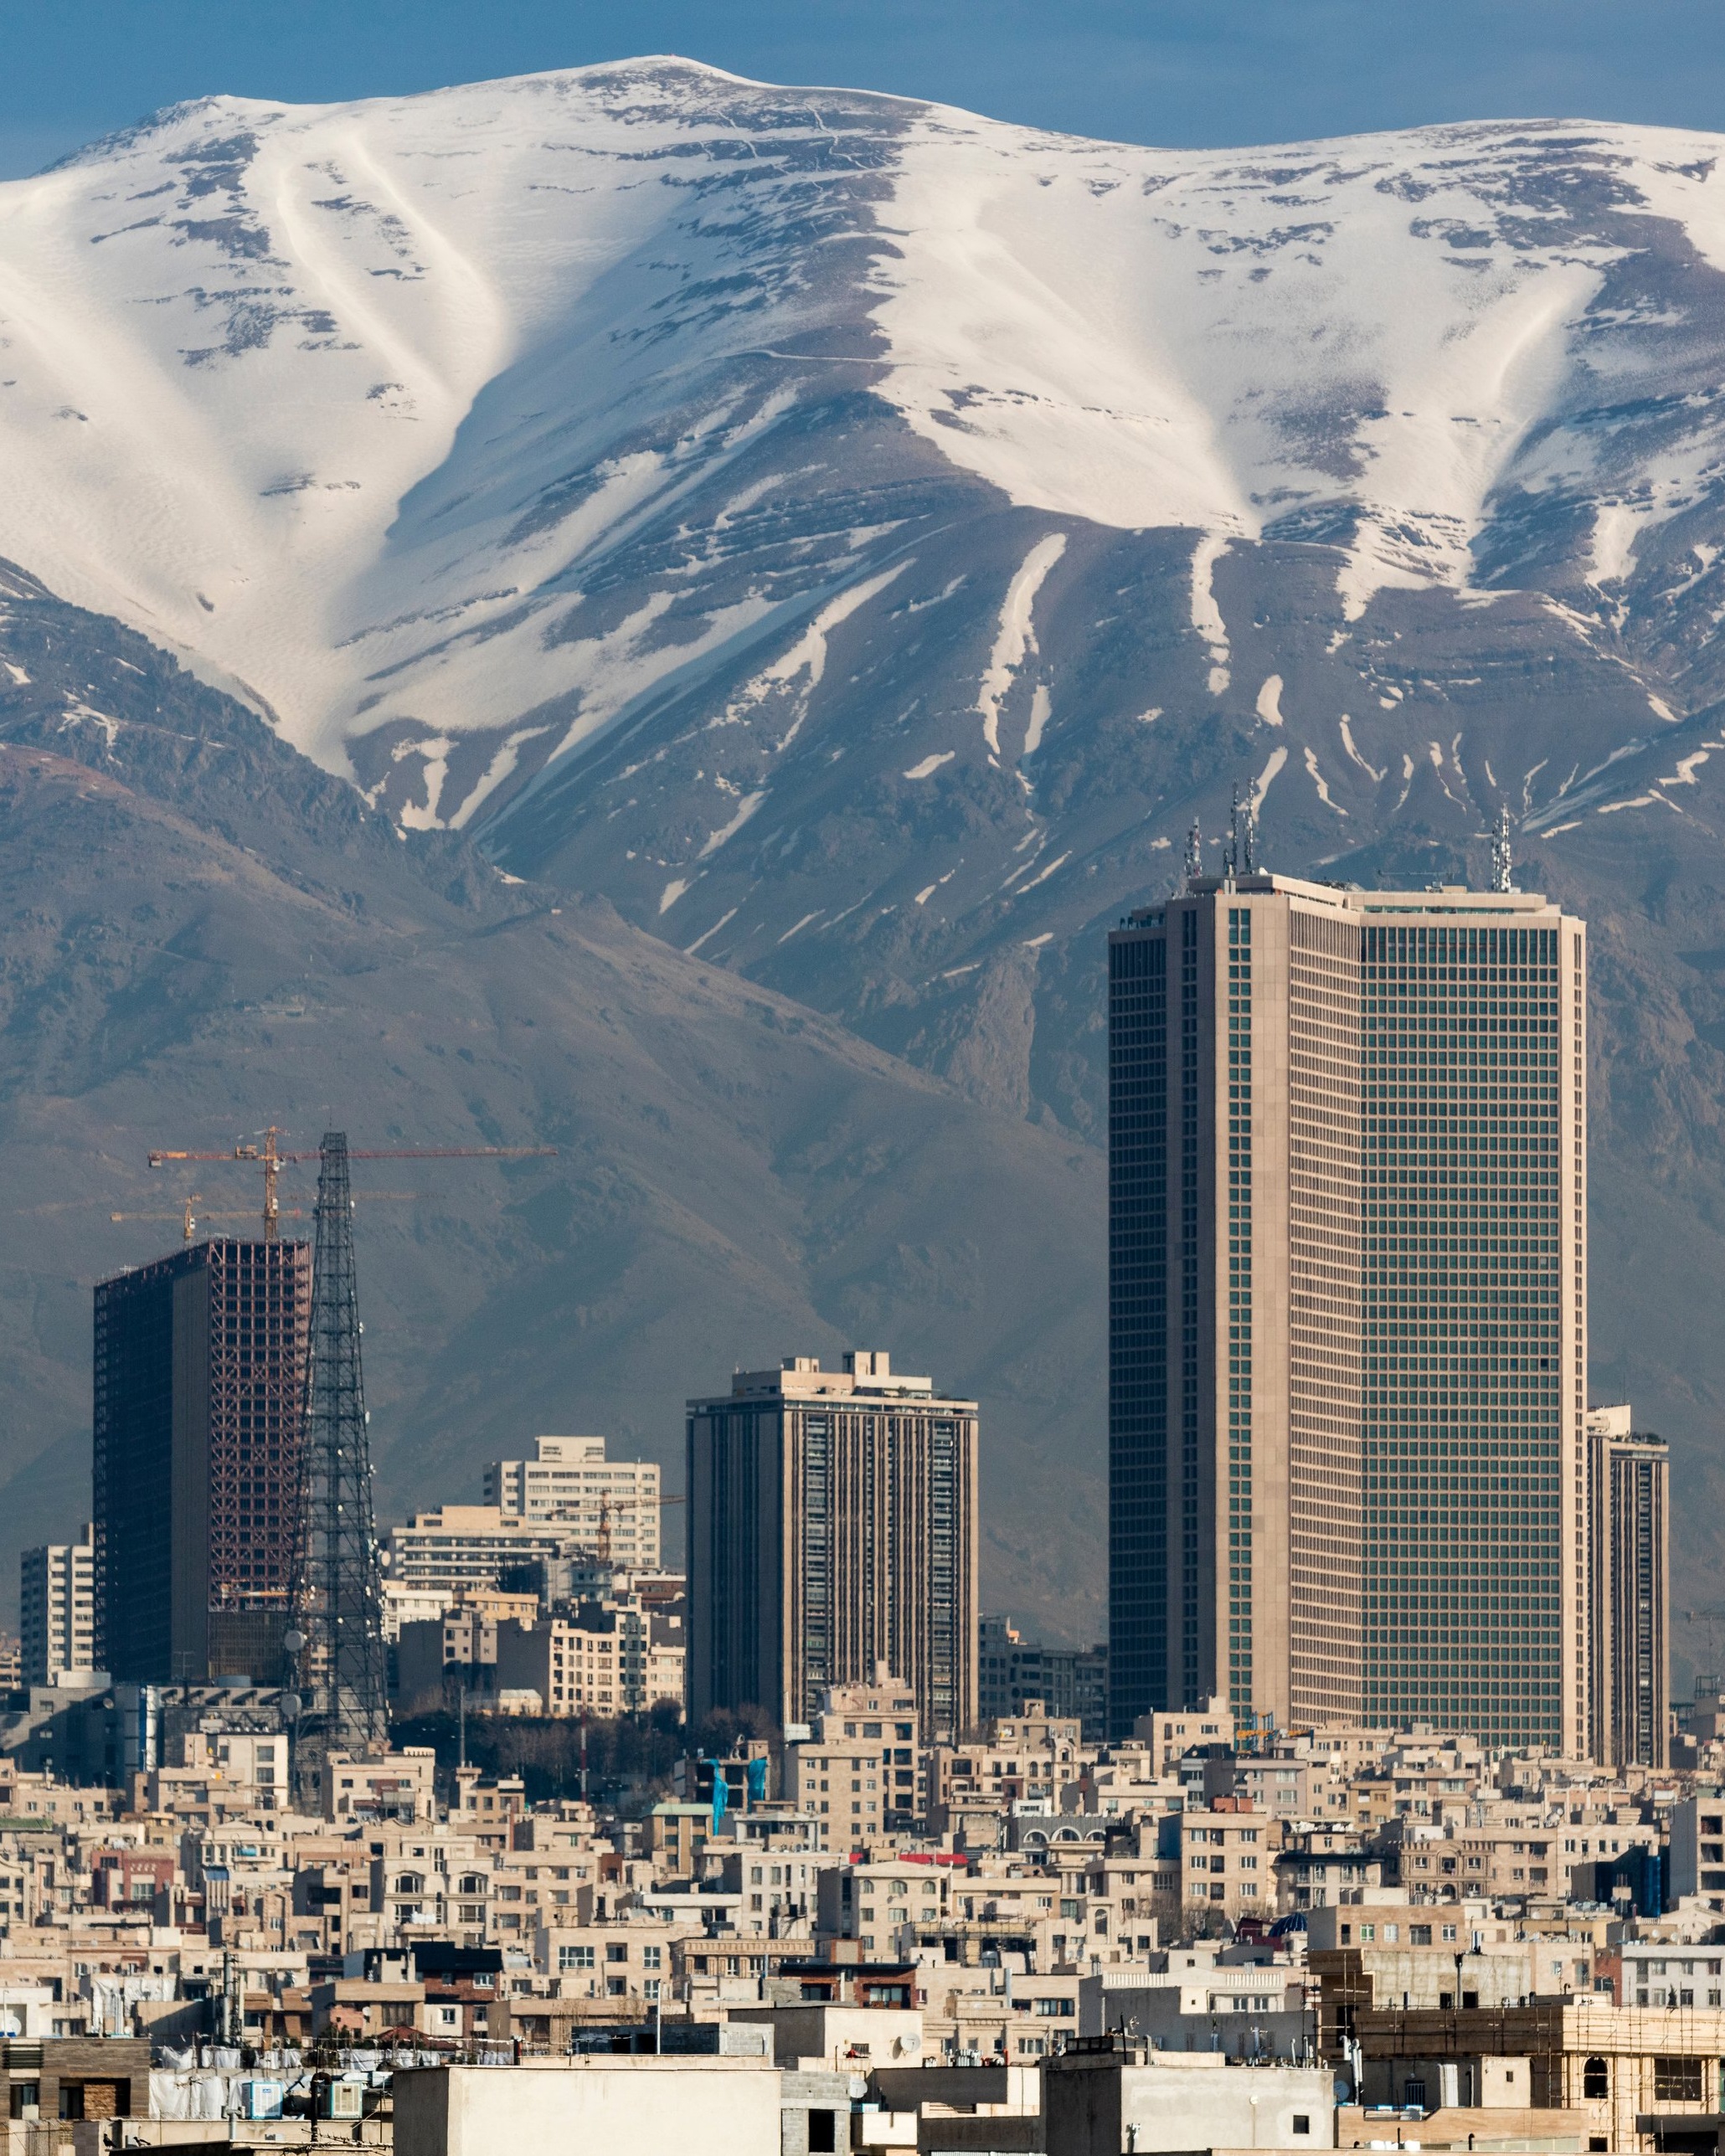 原创背靠大山,面朝沙漠,伊朗首都德黑兰战略位置如何?